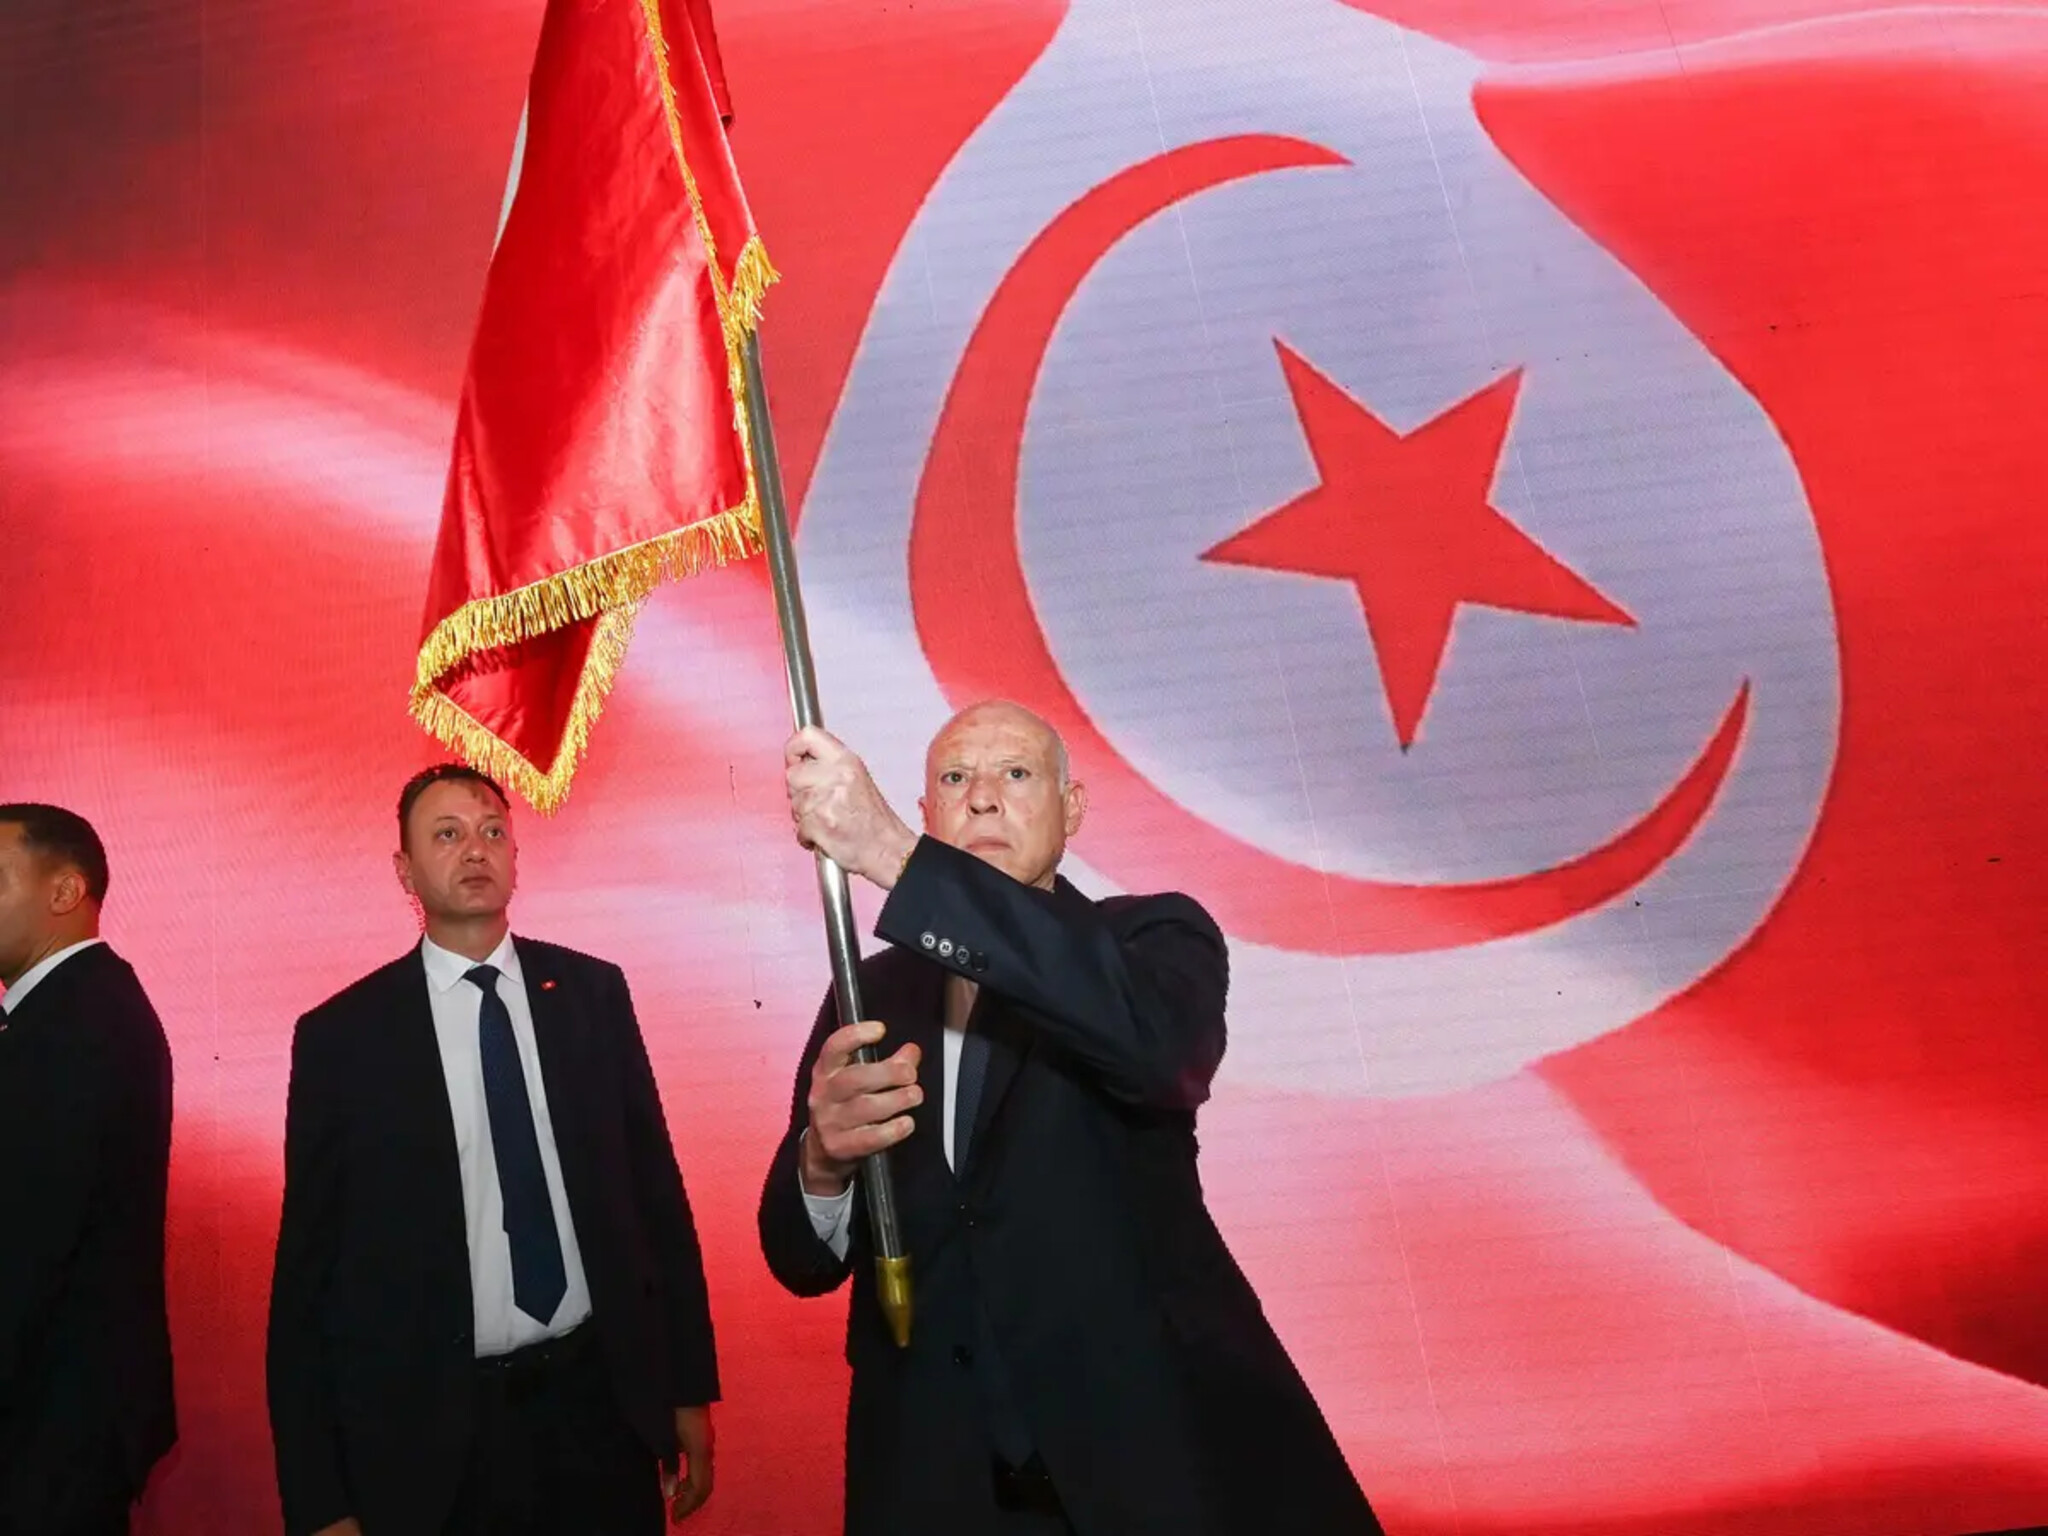 توقيف مسؤولين رياضيين للتحقيق معهم بواقعة حجب العلم التونسي